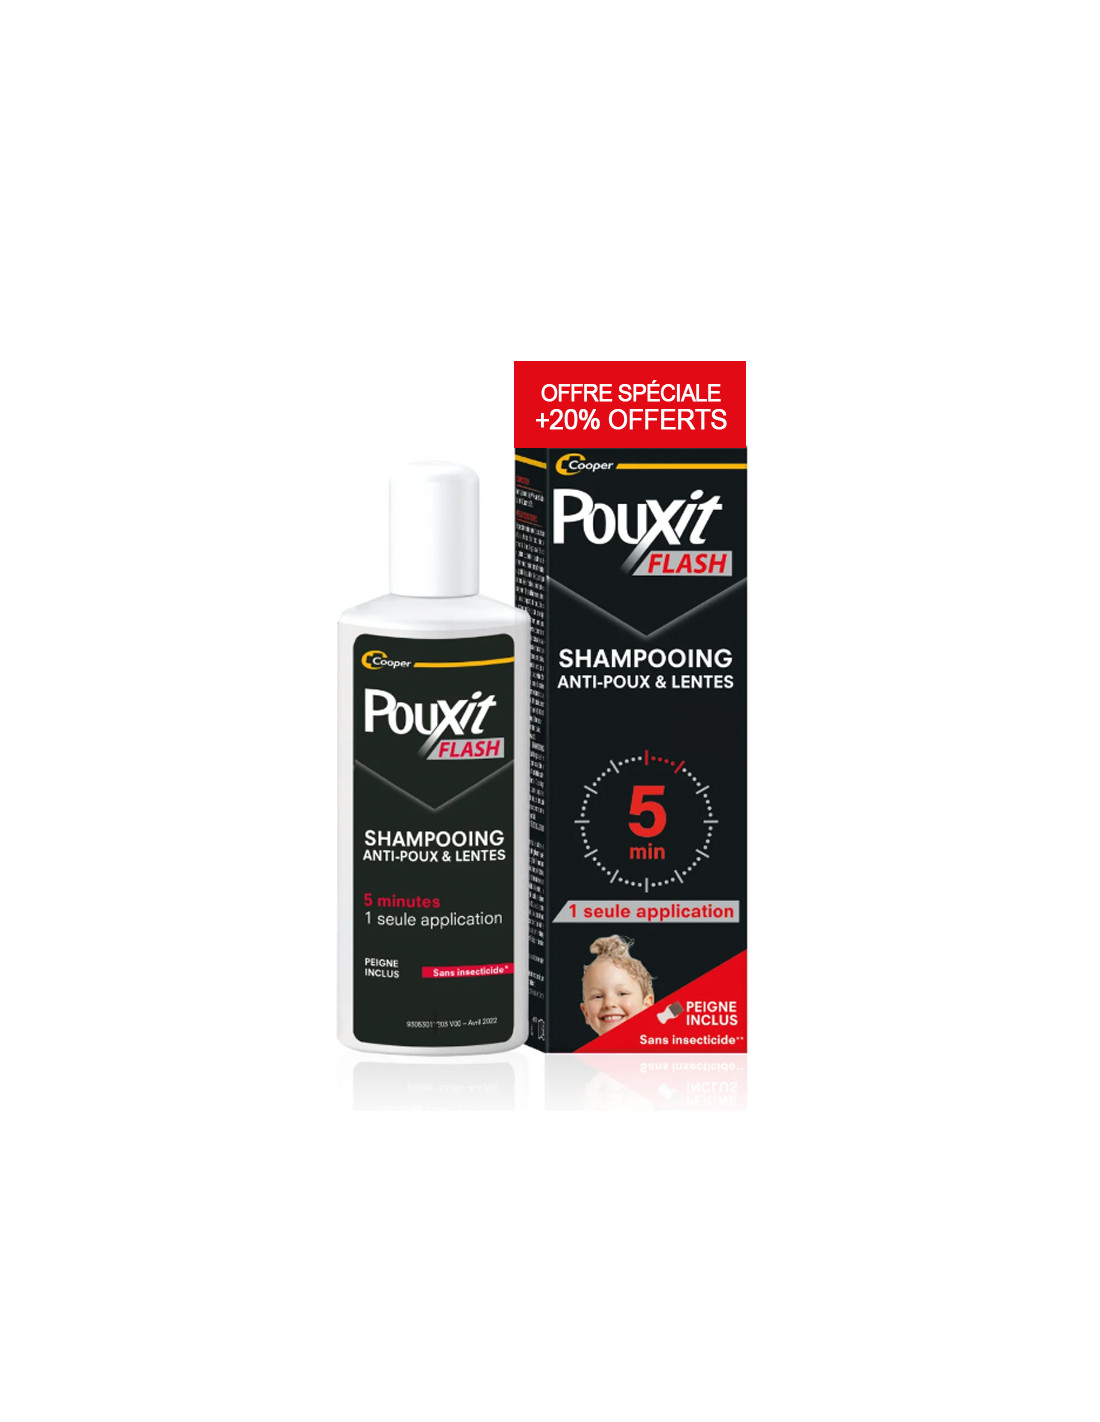 Pouxit Flash Traitement poux & lentes 5 minutes. 150ml + 30ml OFFERT |  Archange Pharma